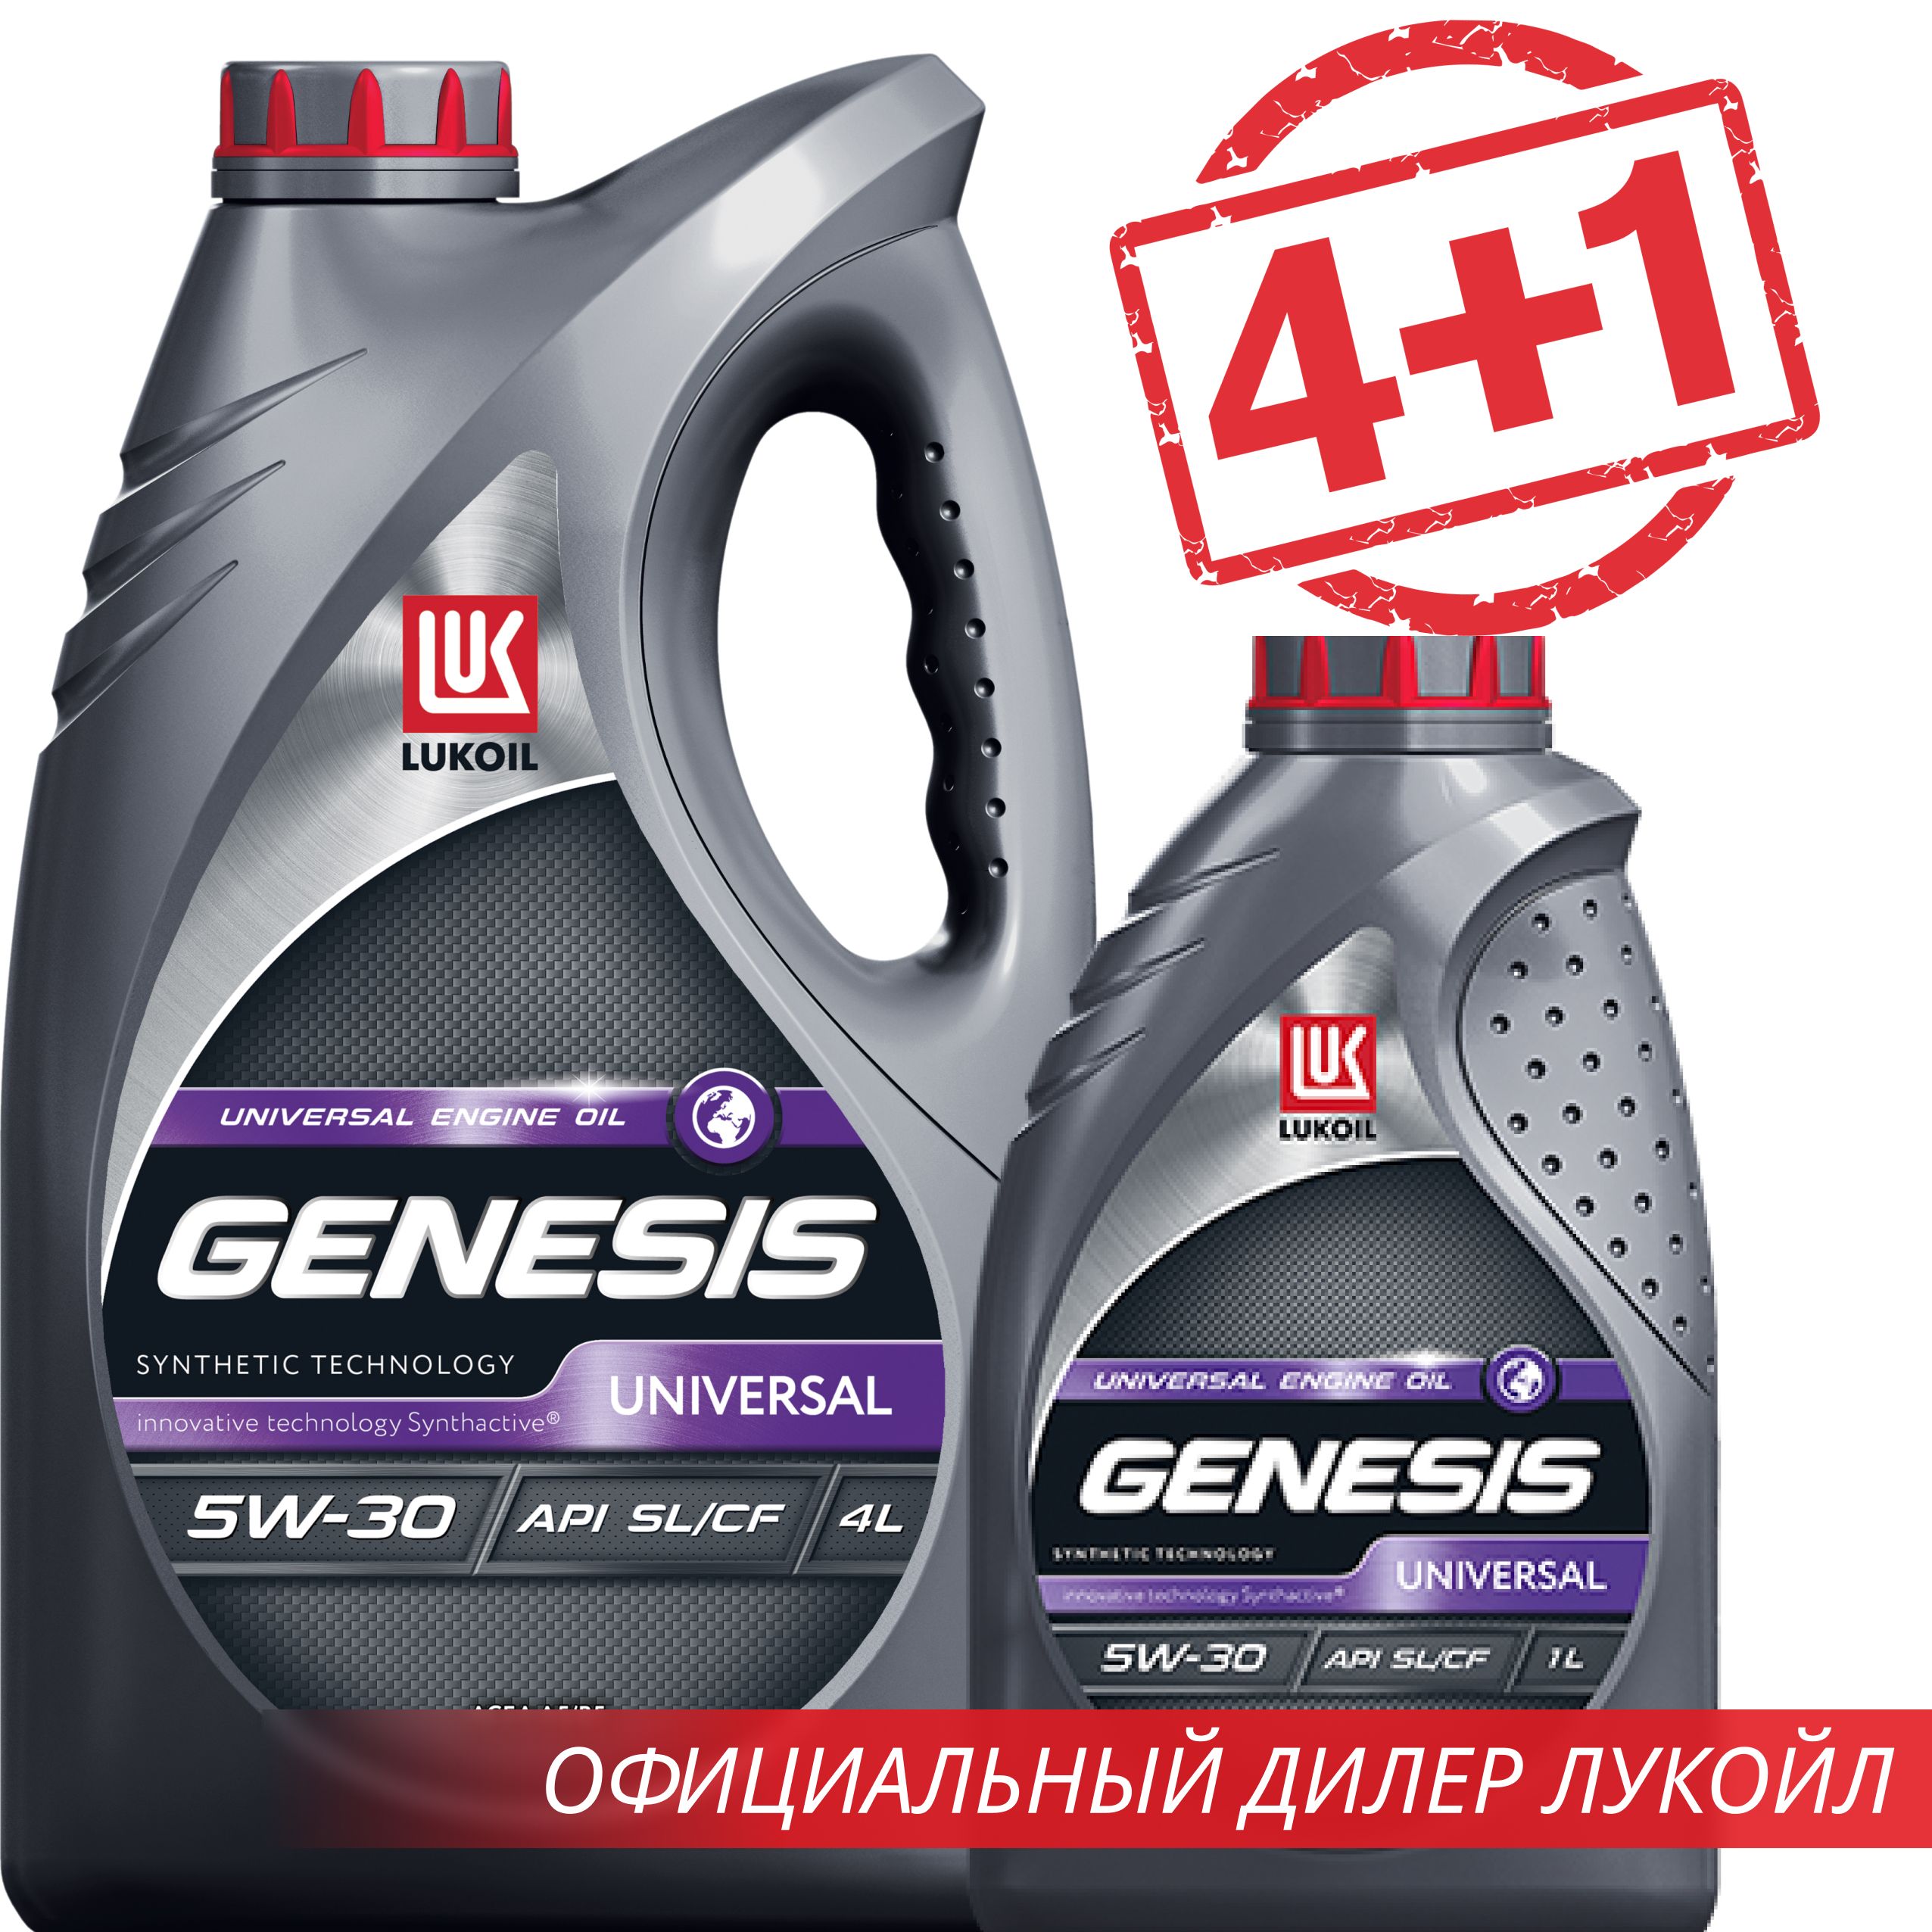 Лукойл генезис универсал отзывы. Лукойл Genesis Universal 5w40. Genesis Universal 5w-40. Lukoil Genesis Universal 5w-40. Lukoil Genesis Universal Diesel 5w-30.